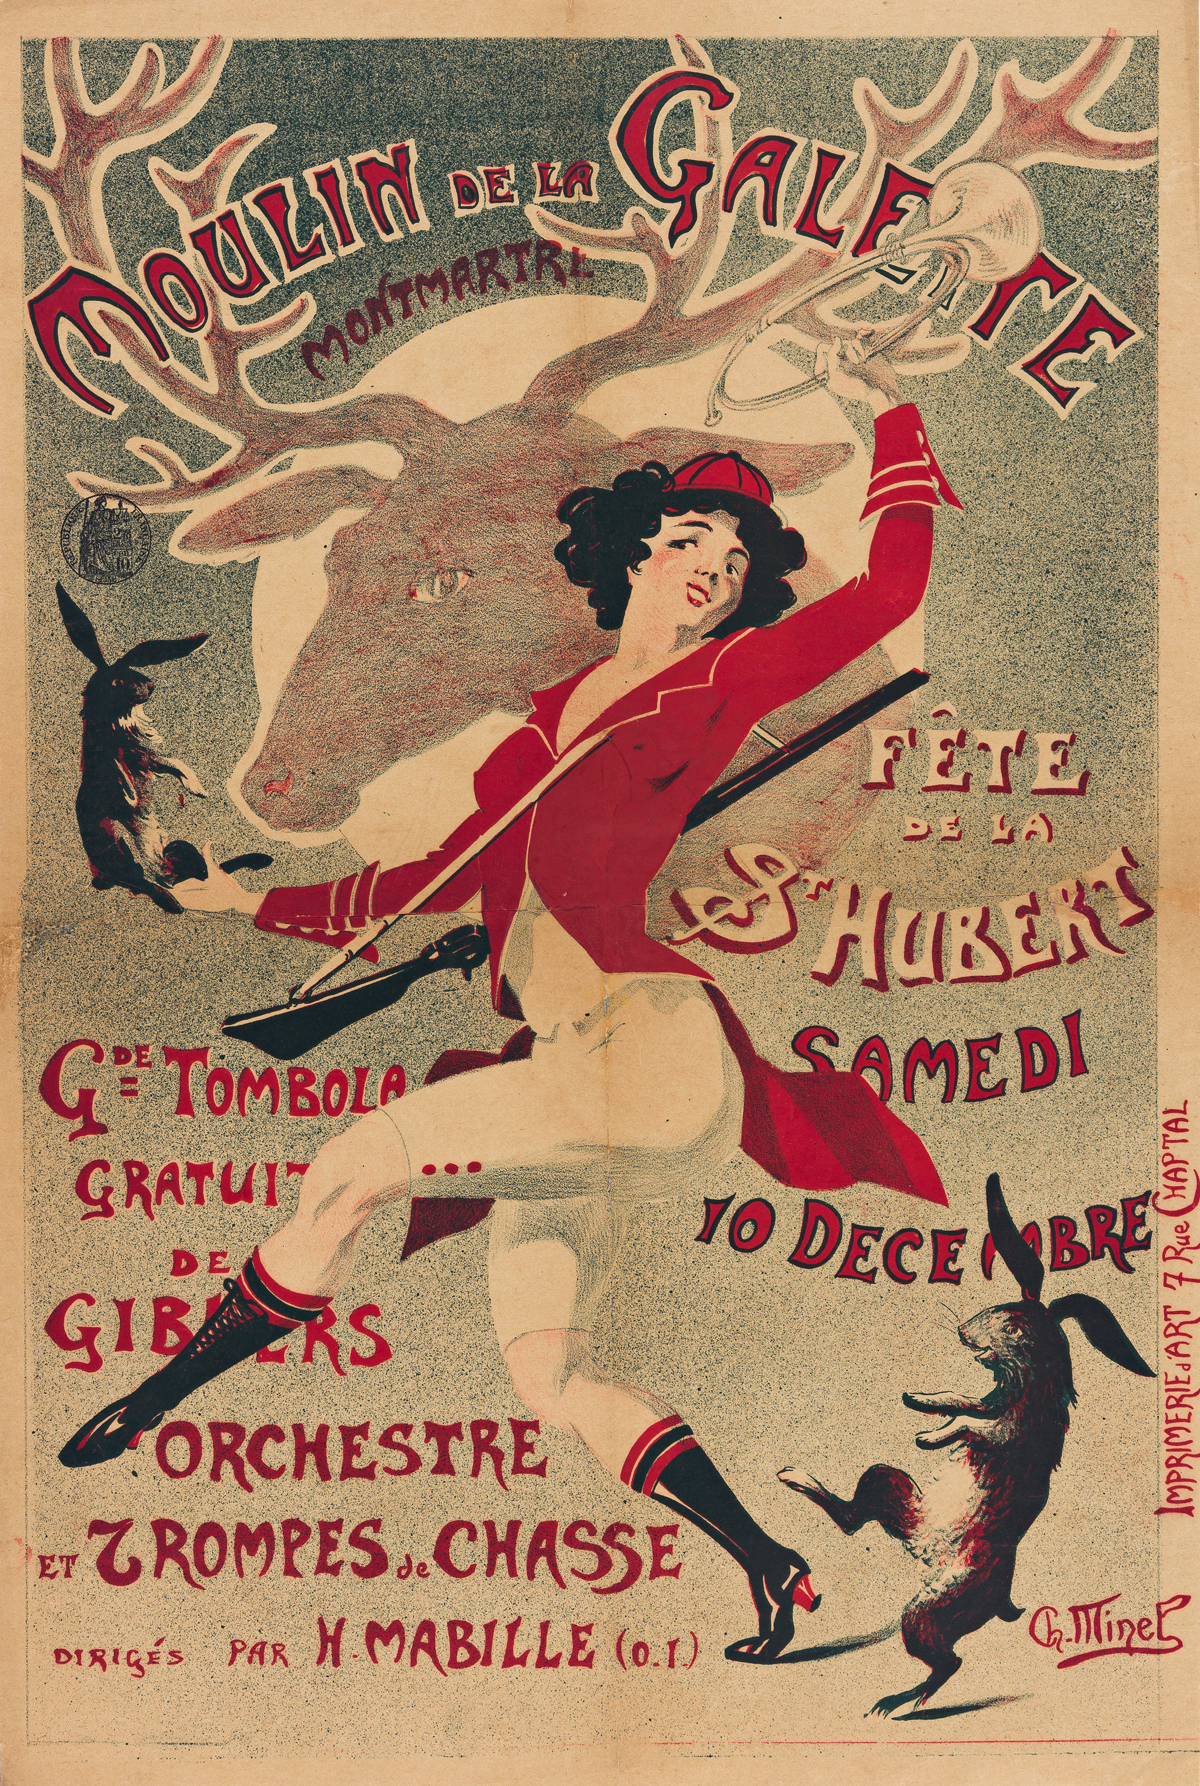 CH. MINEL (DATES UNKNOWN).  MOULIN DE LA GALETTE. Circa 1900. 22x15 inches, 57x38 cm. Imprimerie dArt, Paris.